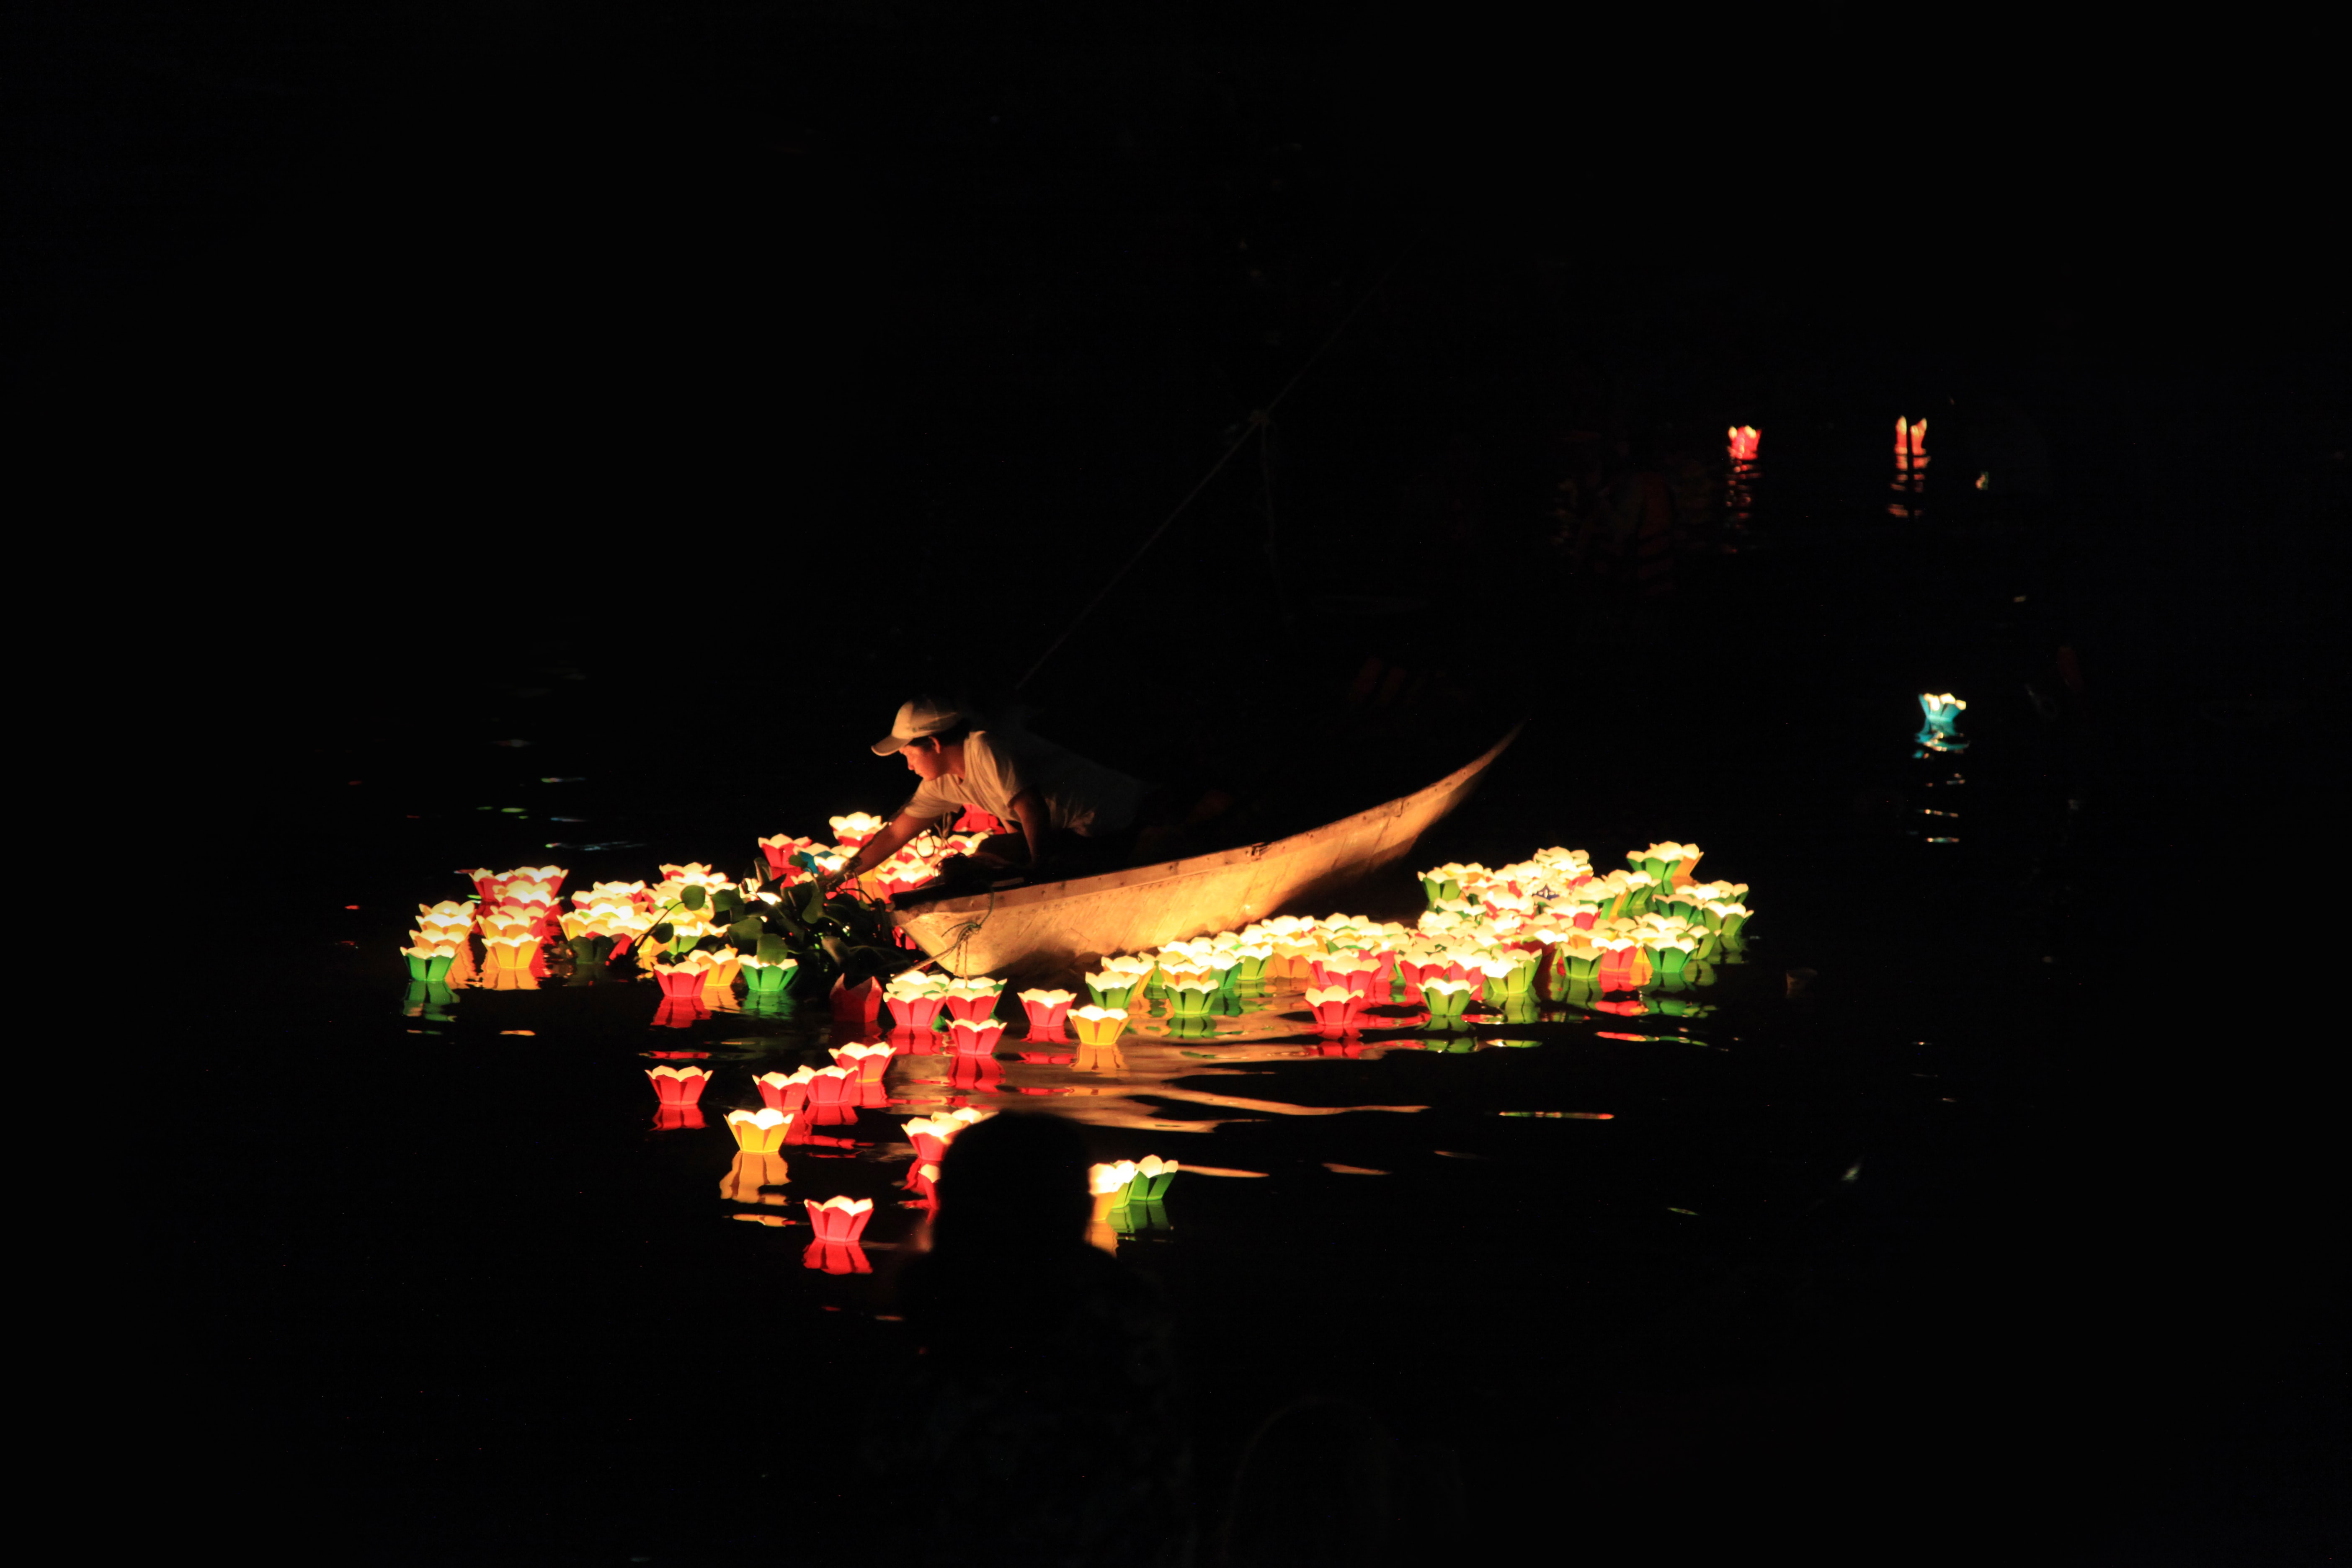 Laternenfestival mit bunten Laternen auf dunkelem Wasser